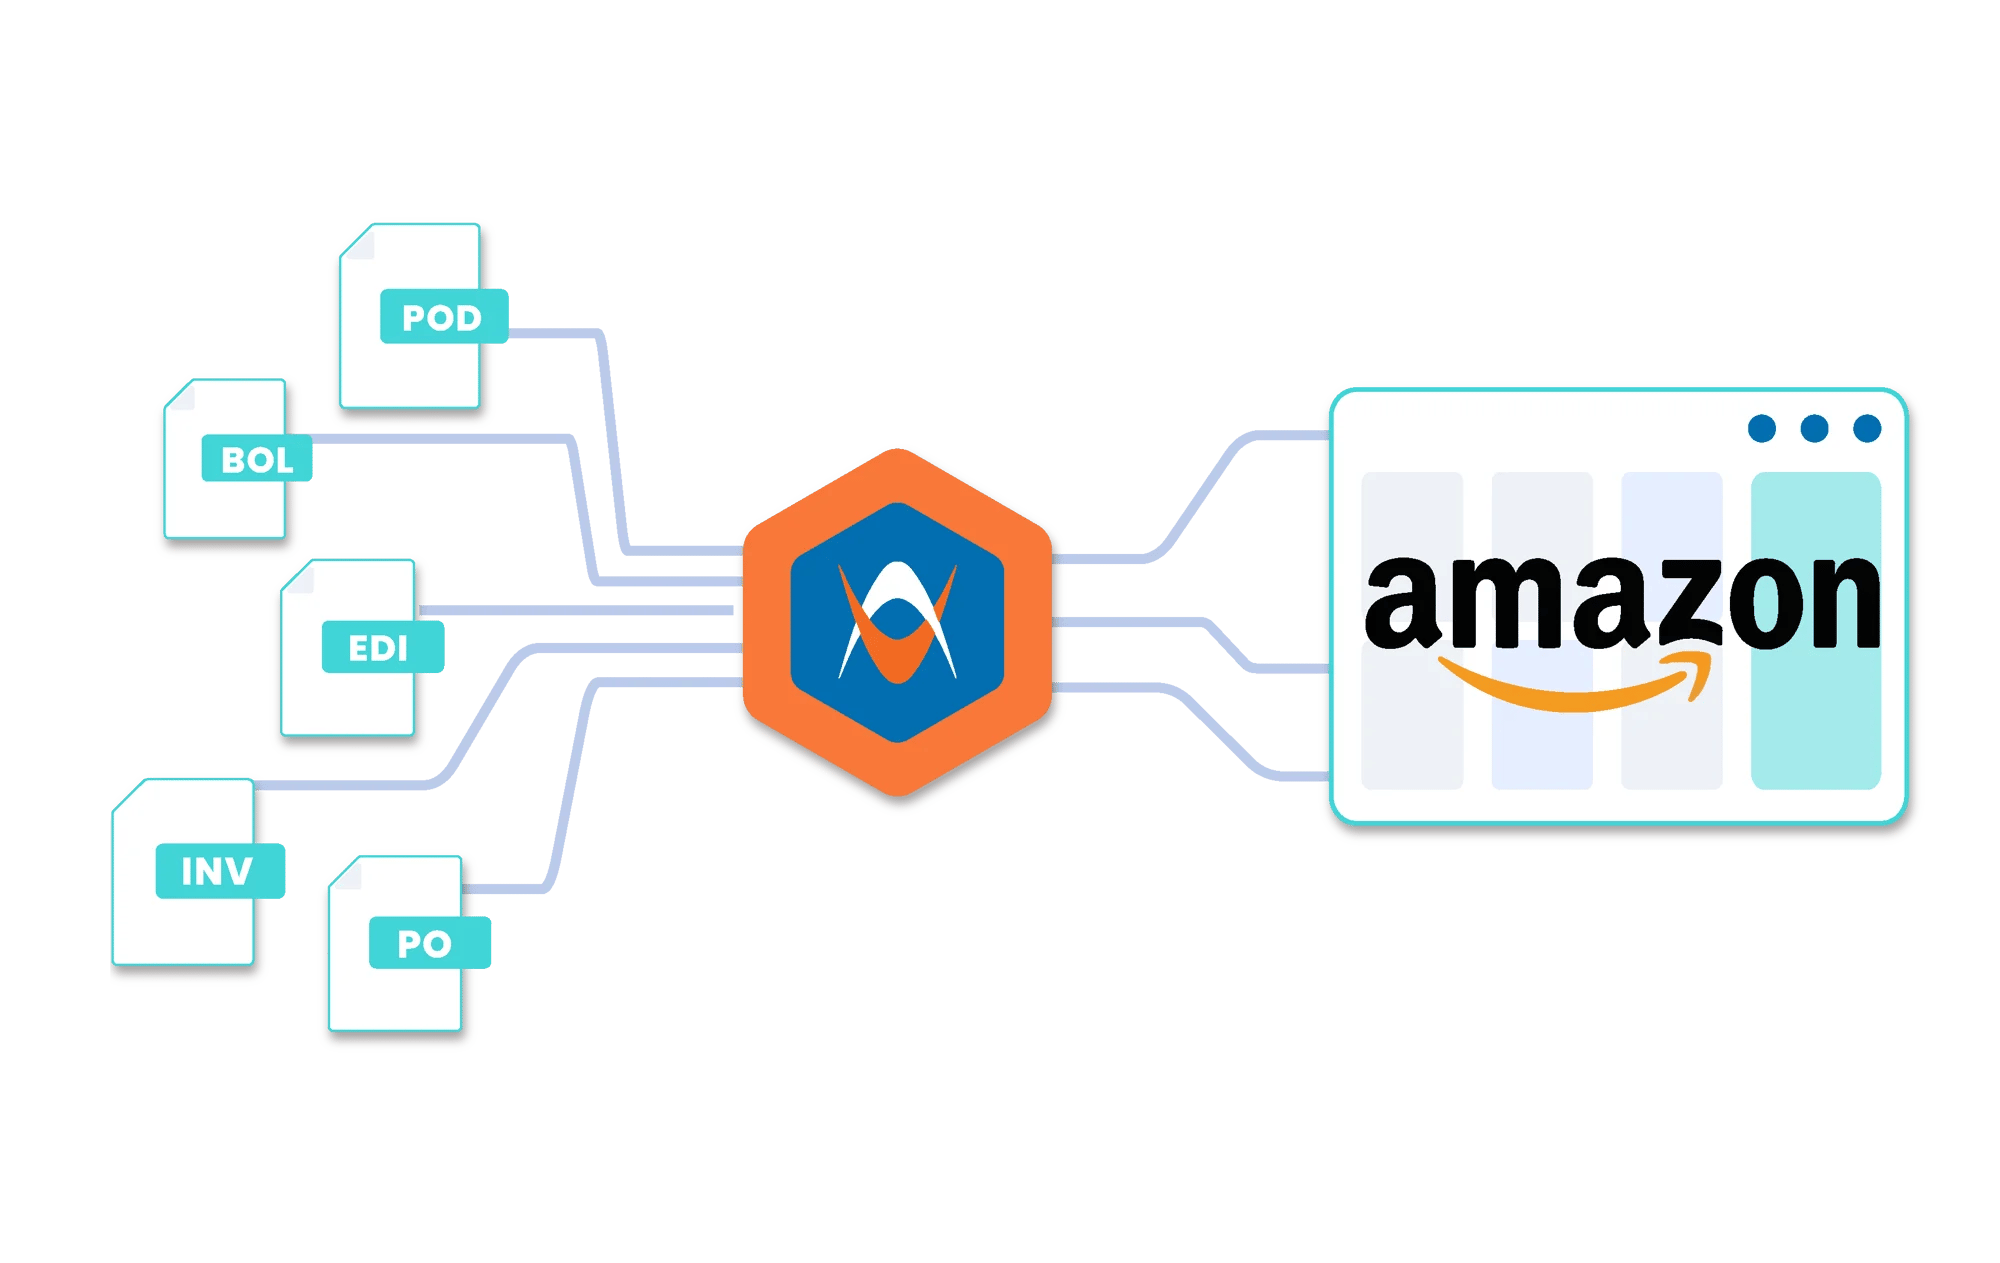 Identifying Amazon Claims